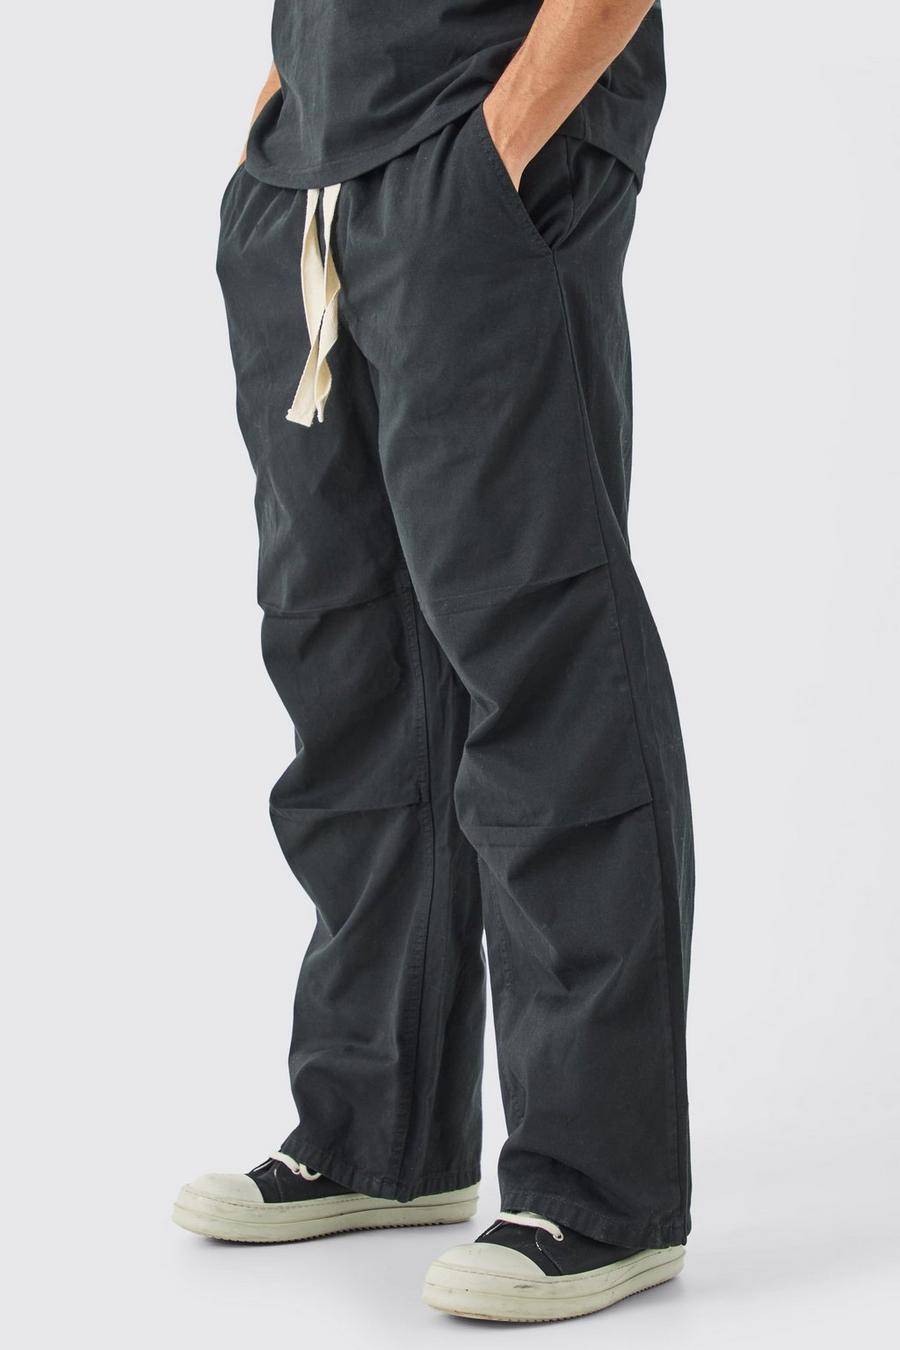 Lockere Hose mit elastischem Bund und Kontrast-Kordelzug, Charcoal